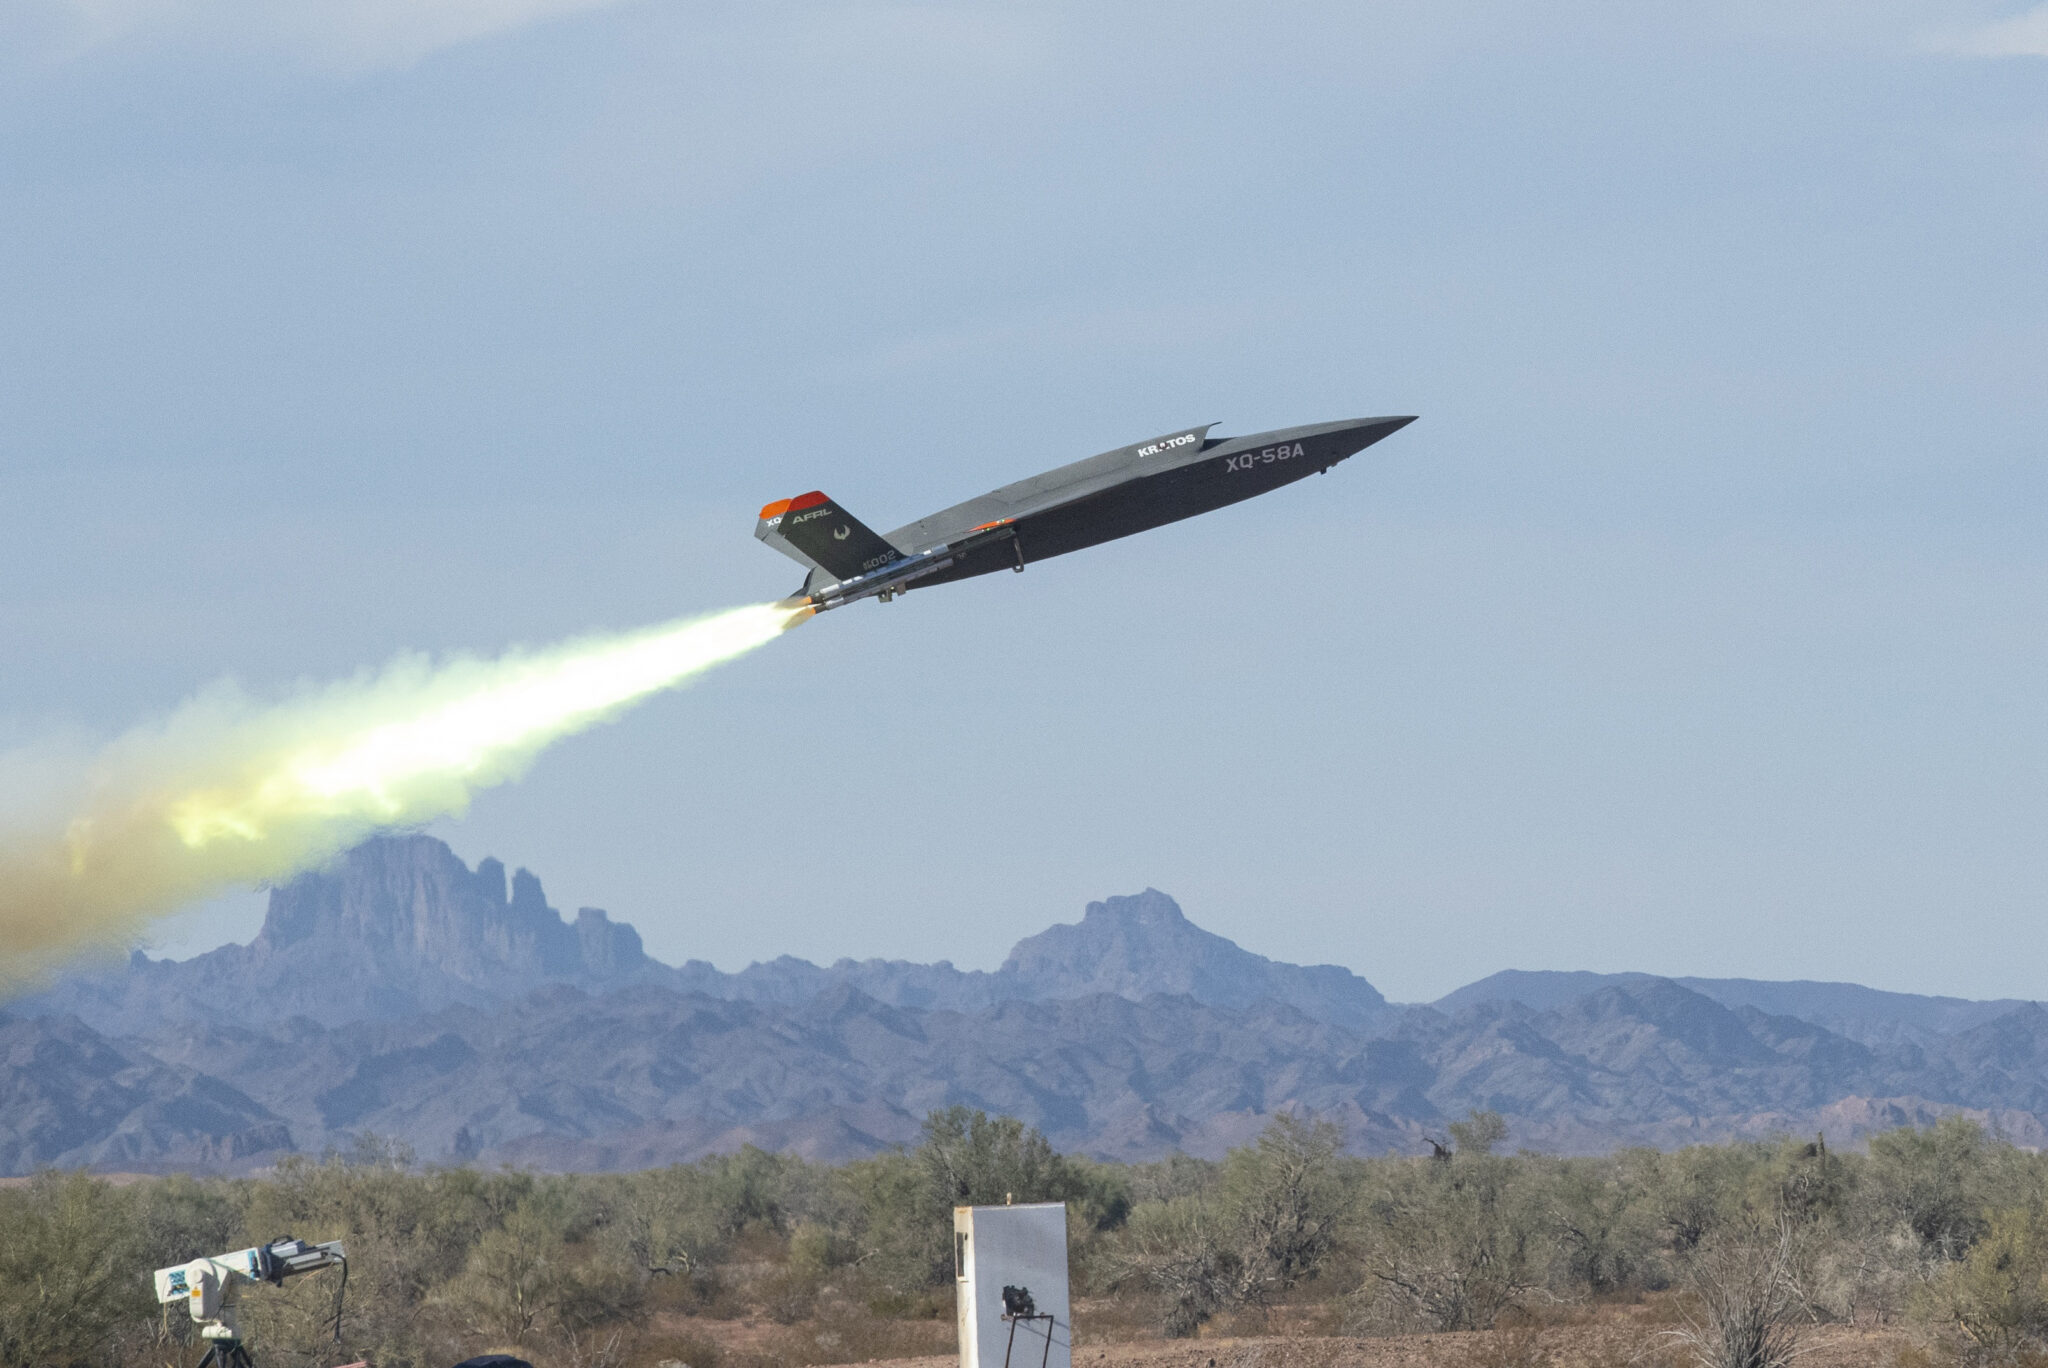 Die US-Marine erhält Kampfdrohnen des Typs XQ-58A Valkyrie im Wert von 15,5 Millionen Dollar